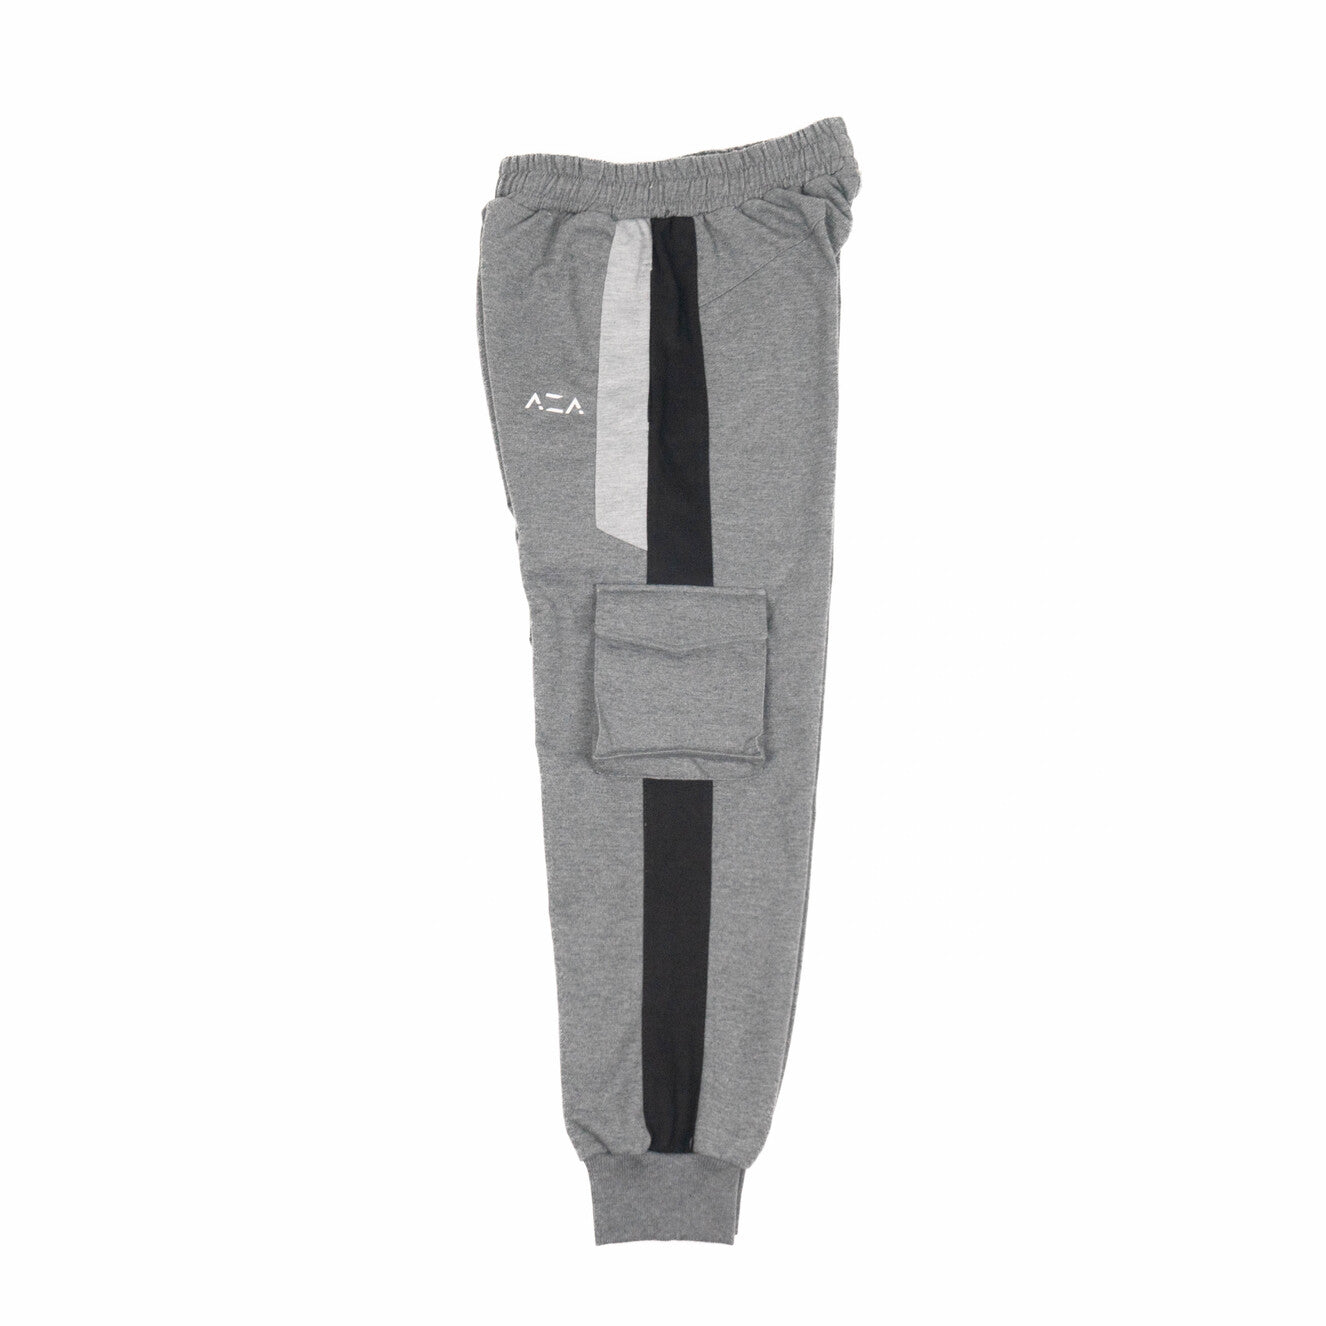 AZA Pocket Jogger - Dark Grey